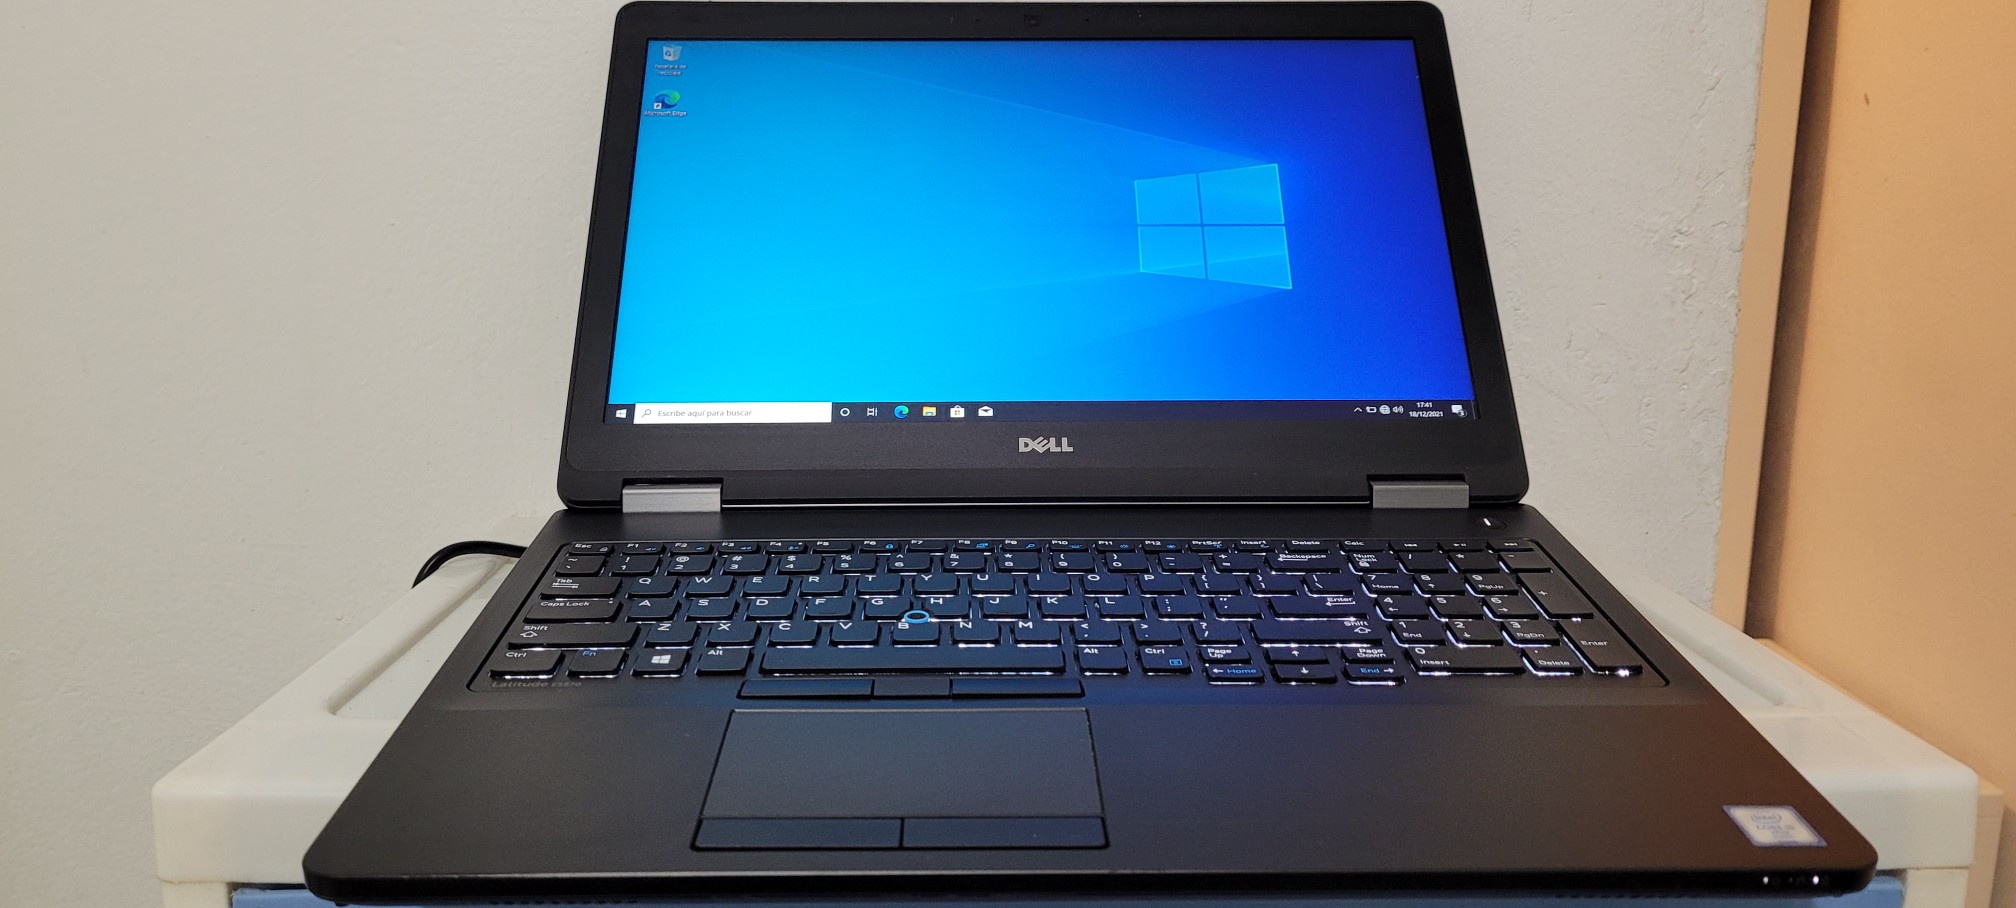 computadoras y laptops - Dell 5570 17 Pulg Core i5 6ta Gen Ram 8gb ddr4 Disco 128gb SSD Y 320GB New 0